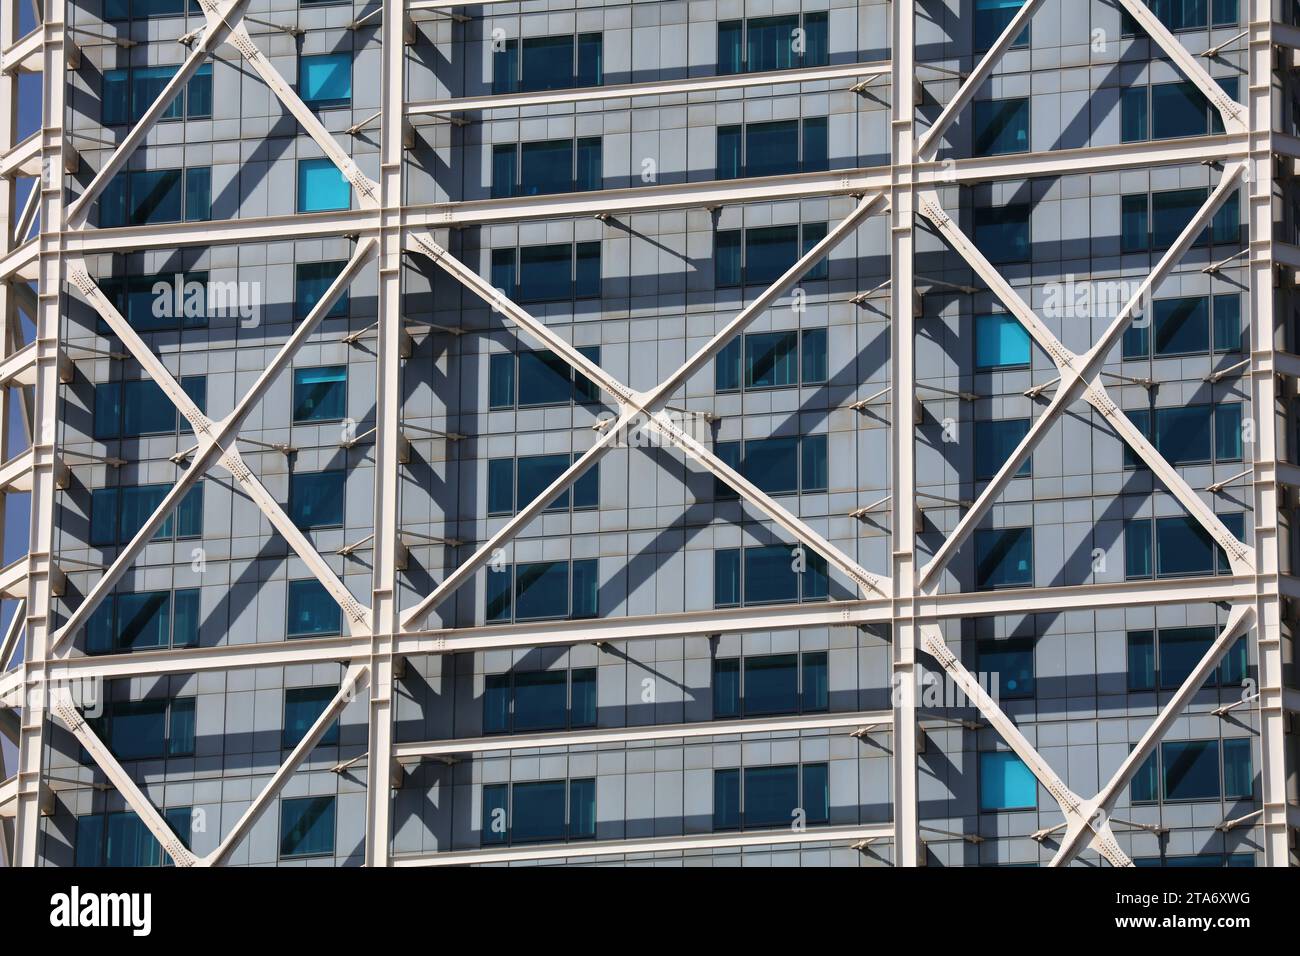 BARCELONE, ESPAGNE - 7 OCTOBRE 2021 : Hôtel Arts bâtiment moderne à Barcelone. L'hôtel de luxe est exploité par Ritz-Carlton. Banque D'Images